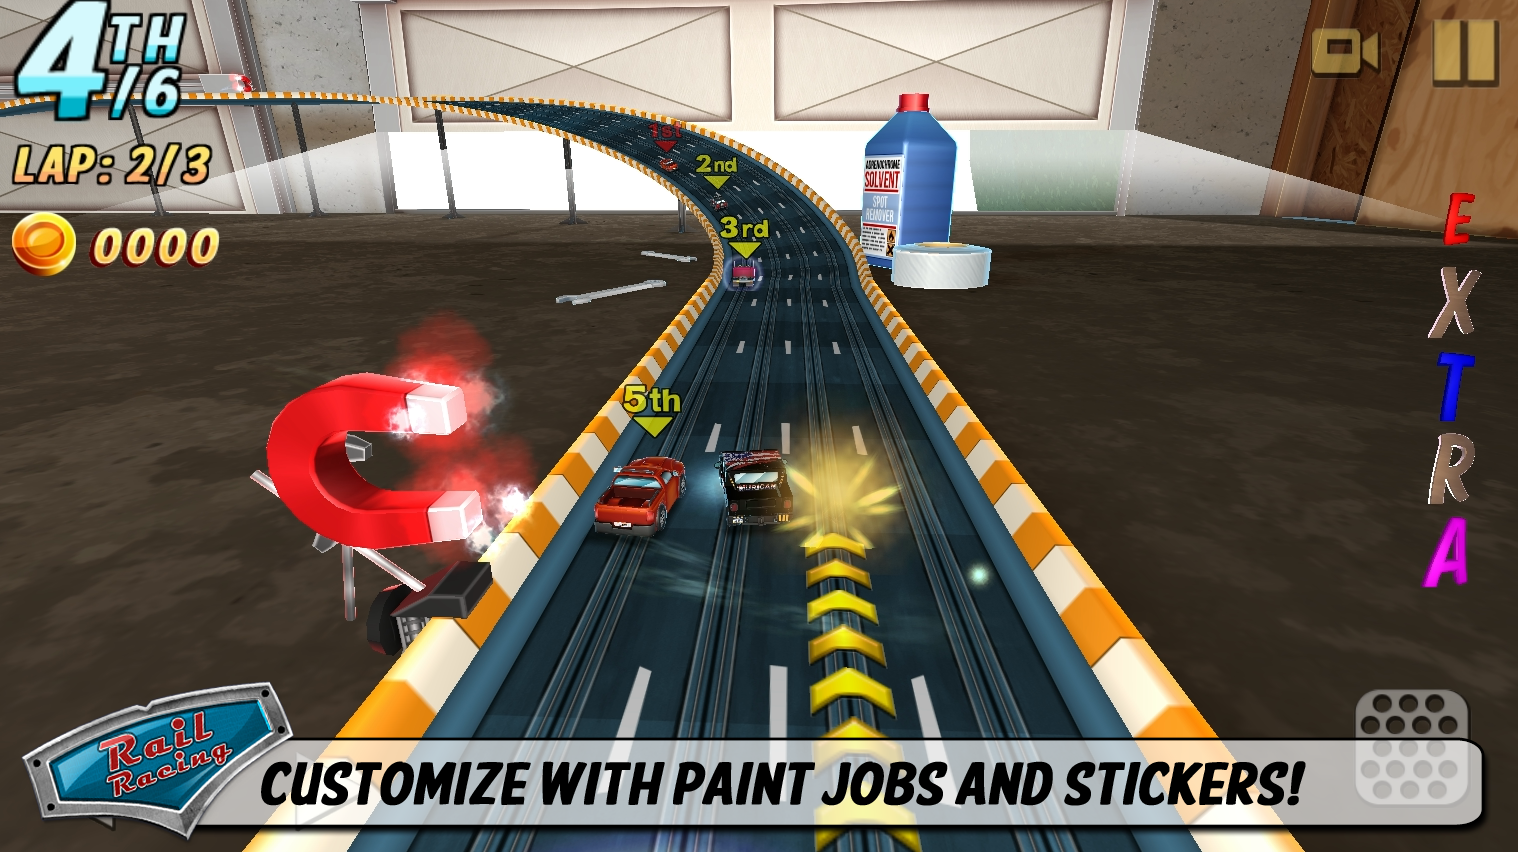 Raylı Racing Limited Edition - ekran görüntüsü